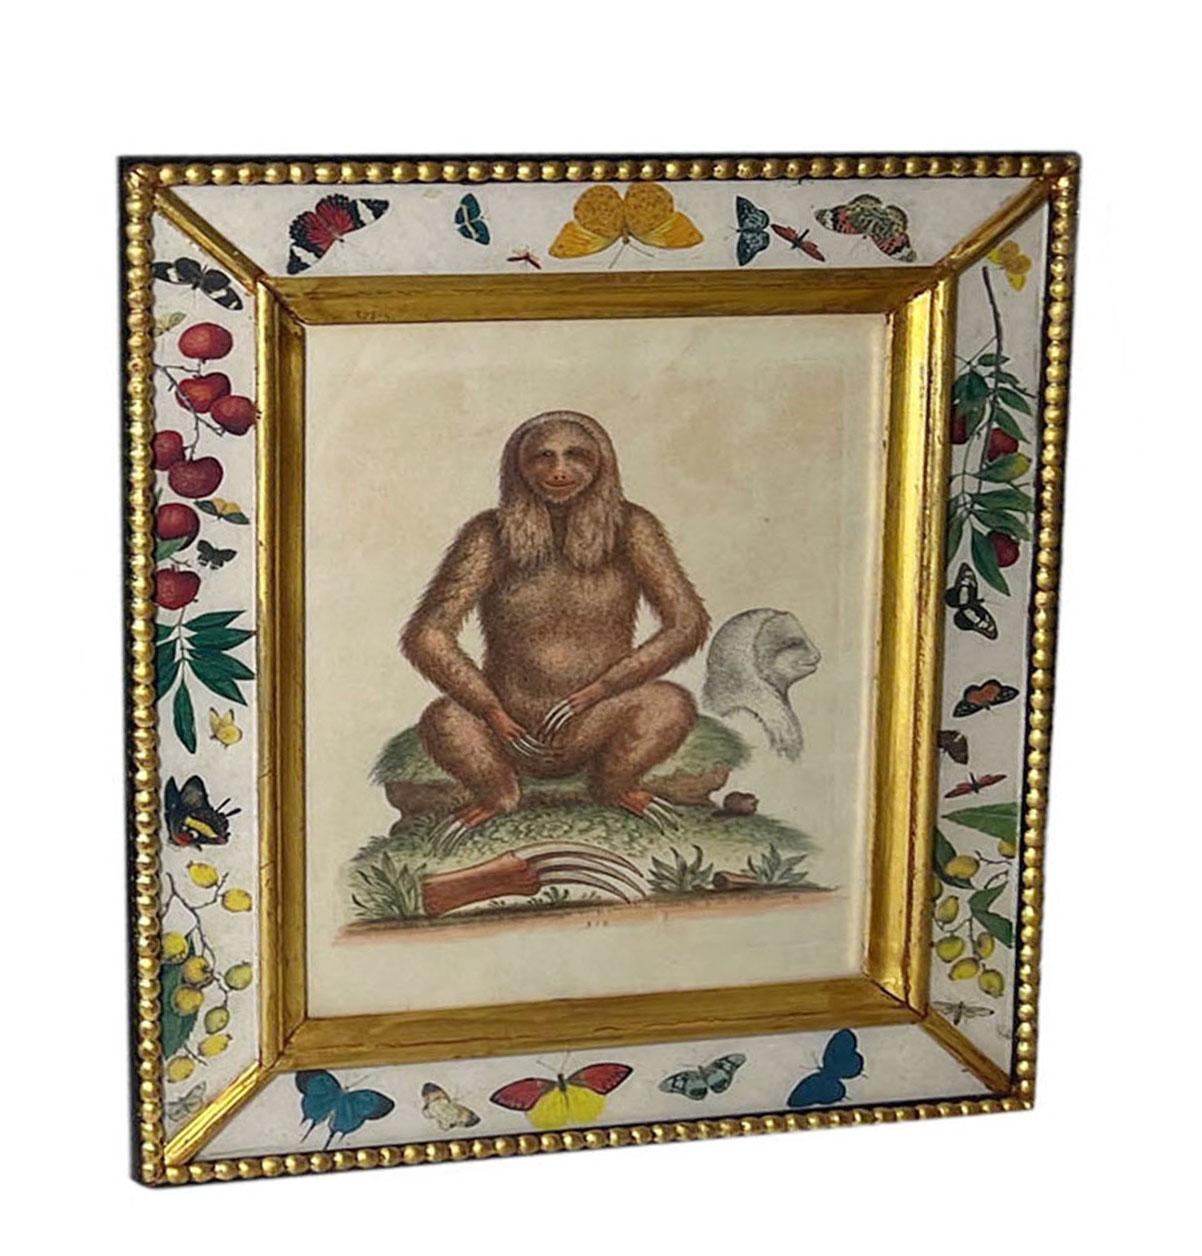 Antiker Kupferstich eines Affen namens Faultier, datiert 1758, signiert Edward Delin Anno. In einem neueren eglomise und geführten Holzrahmen mit Früchten, Blättern und Insekten.
